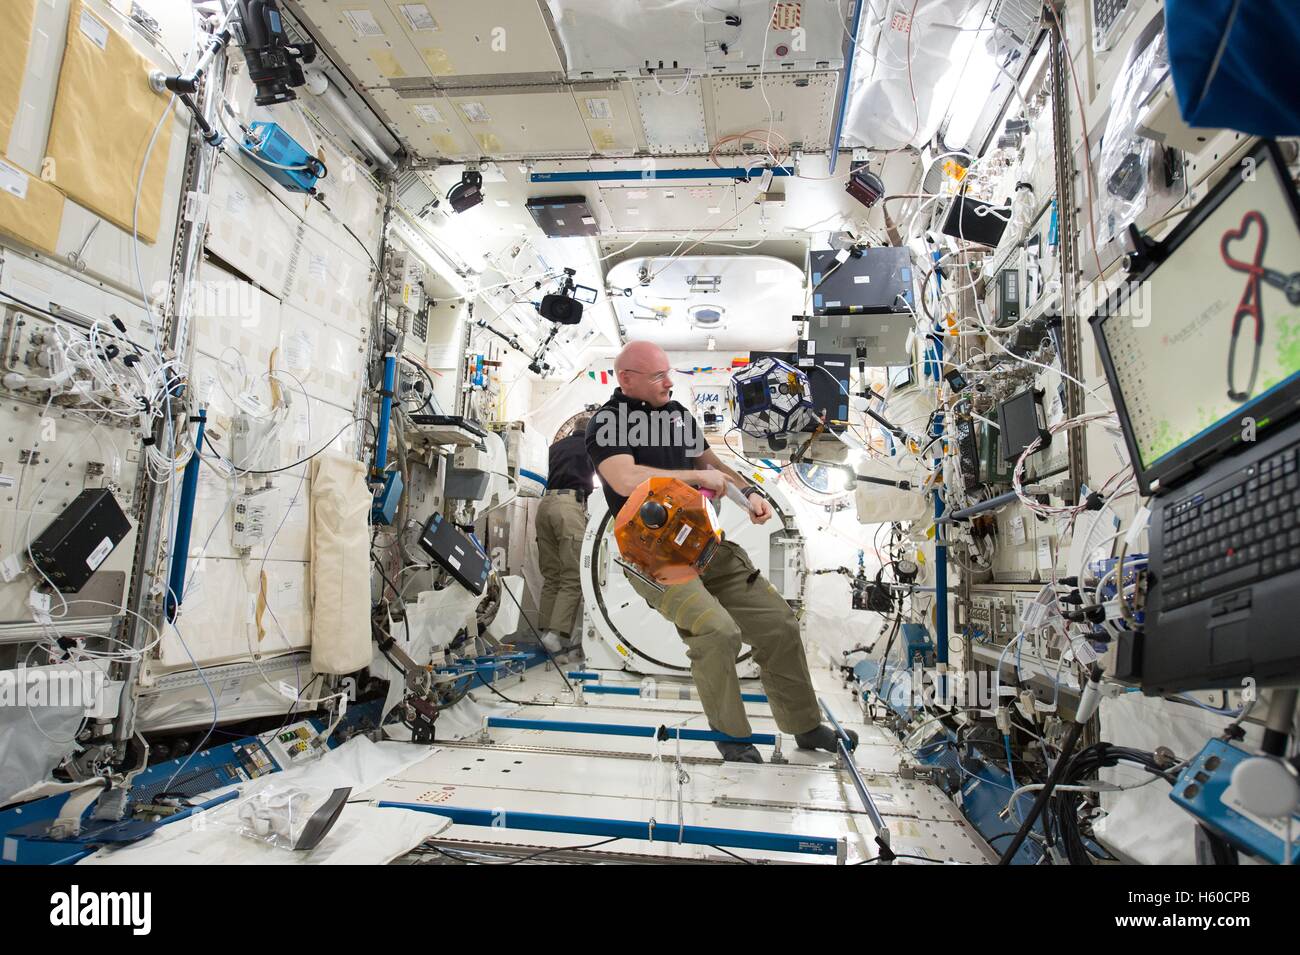 NASA internationale Raumstation ISS-Expedition 44 Mission Prime Crew Astronaut Scott Kelly betreibt einen Sphären Satelliten verwendet für Raumschiff andocken und Manöver 25. Januar 2016 in der Erdumlaufbahn. Stockfoto